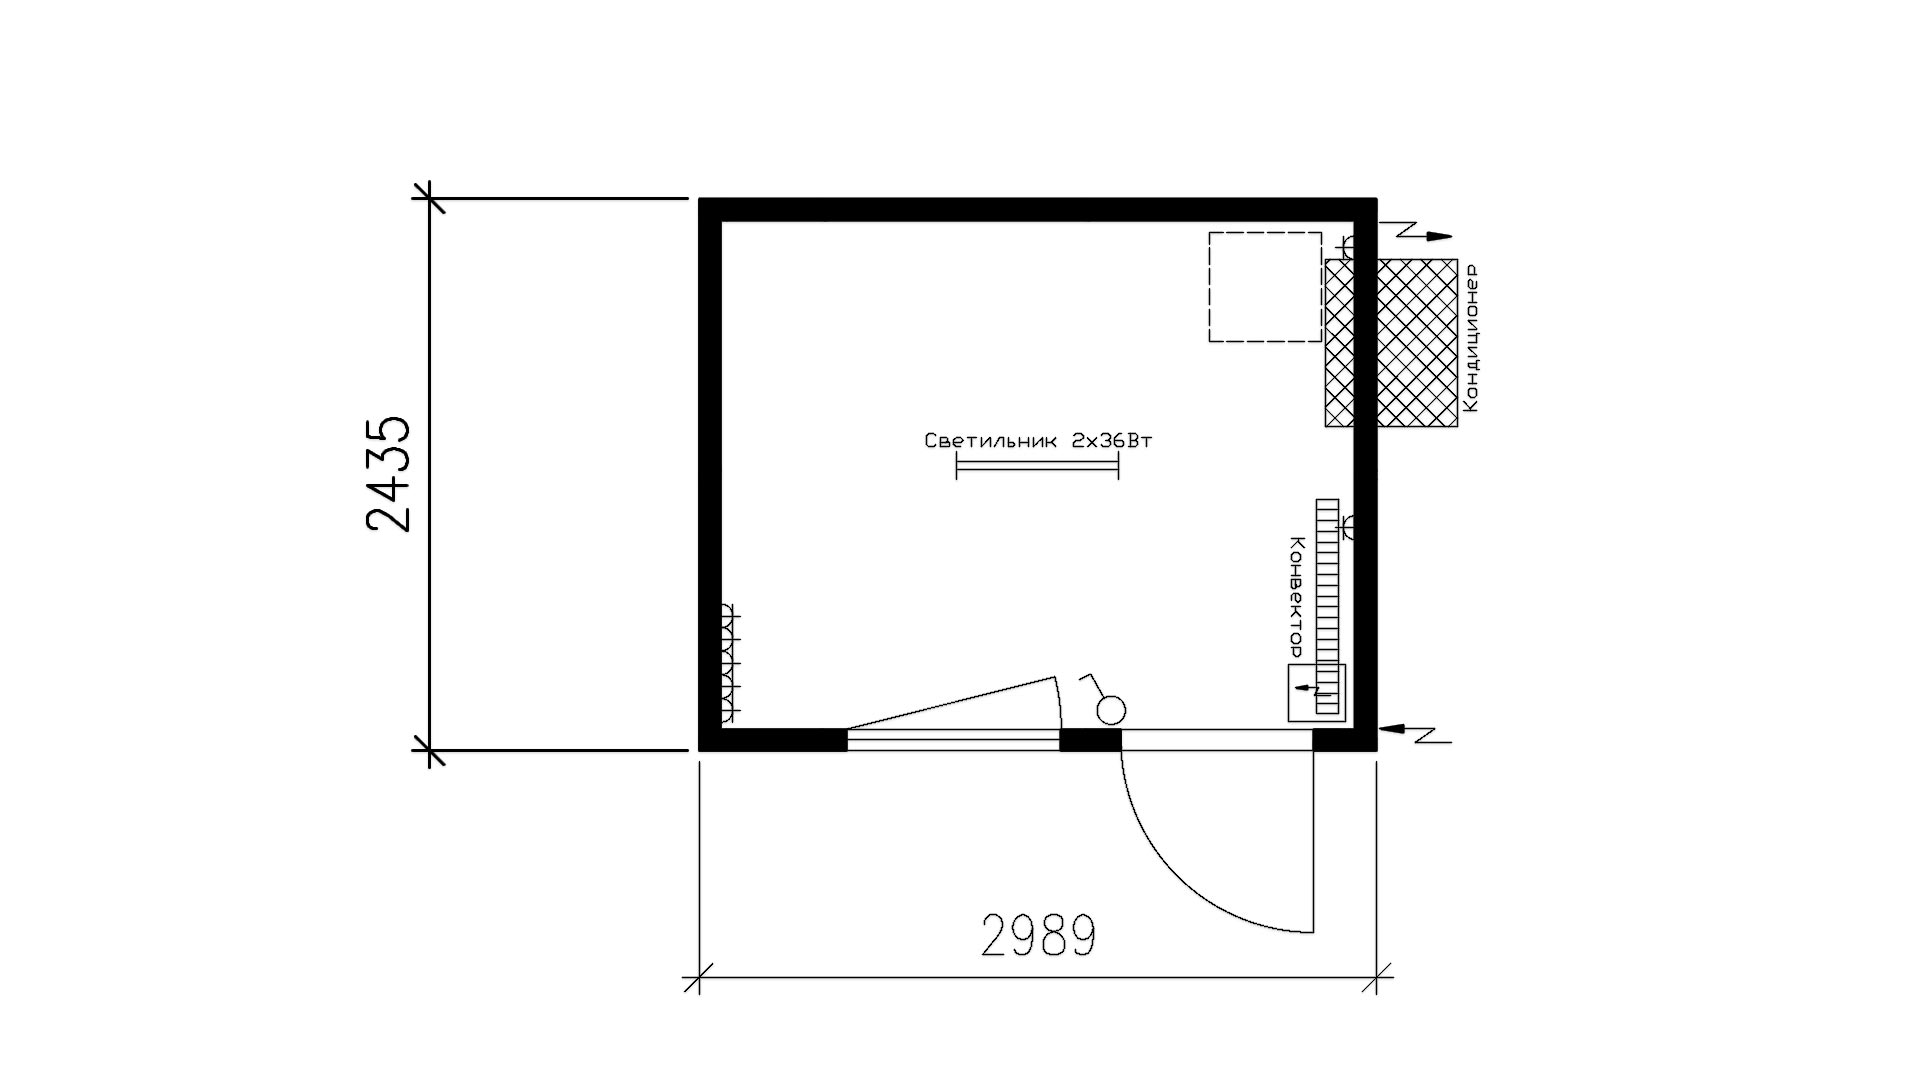 Планировка контейнера офисного (1 окно, 1 дверь, 1 конвектор, 1 кондиционер) 10-футов, размеры: 2989/2435/2750 (Д/Ш/В) мм